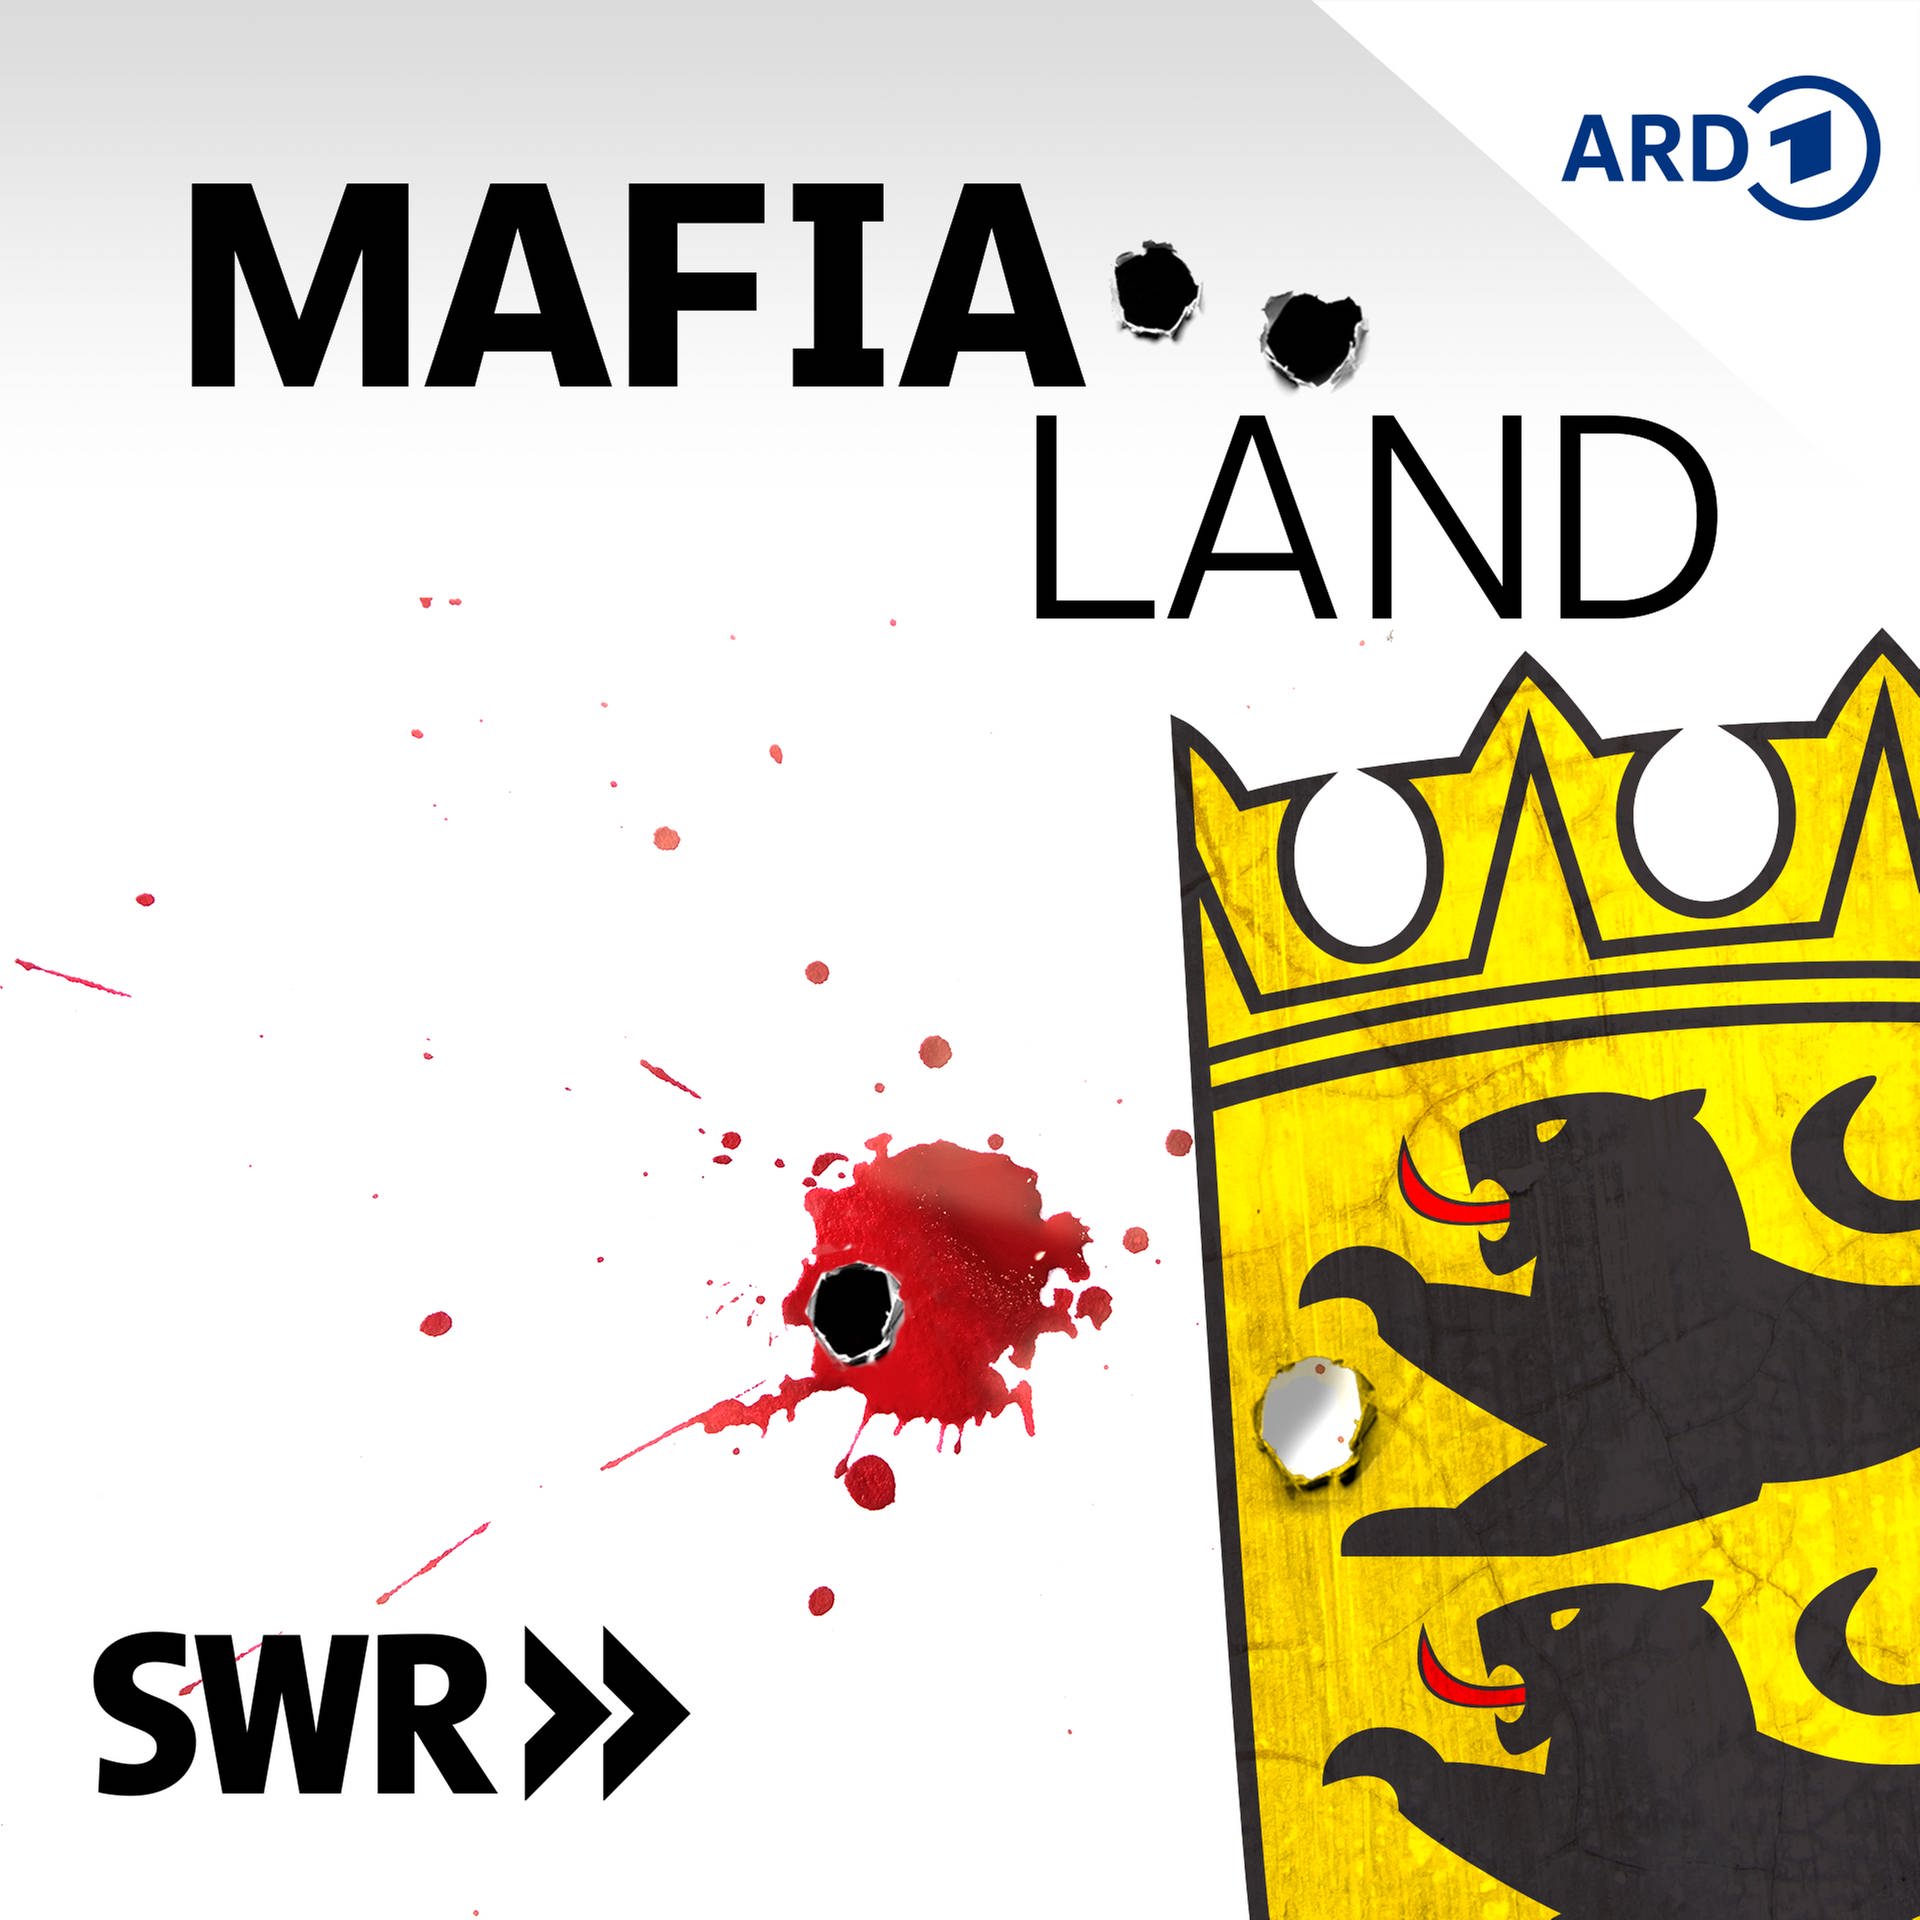 Podcast-Tipp: 11KM auf den Spuren der Mafia